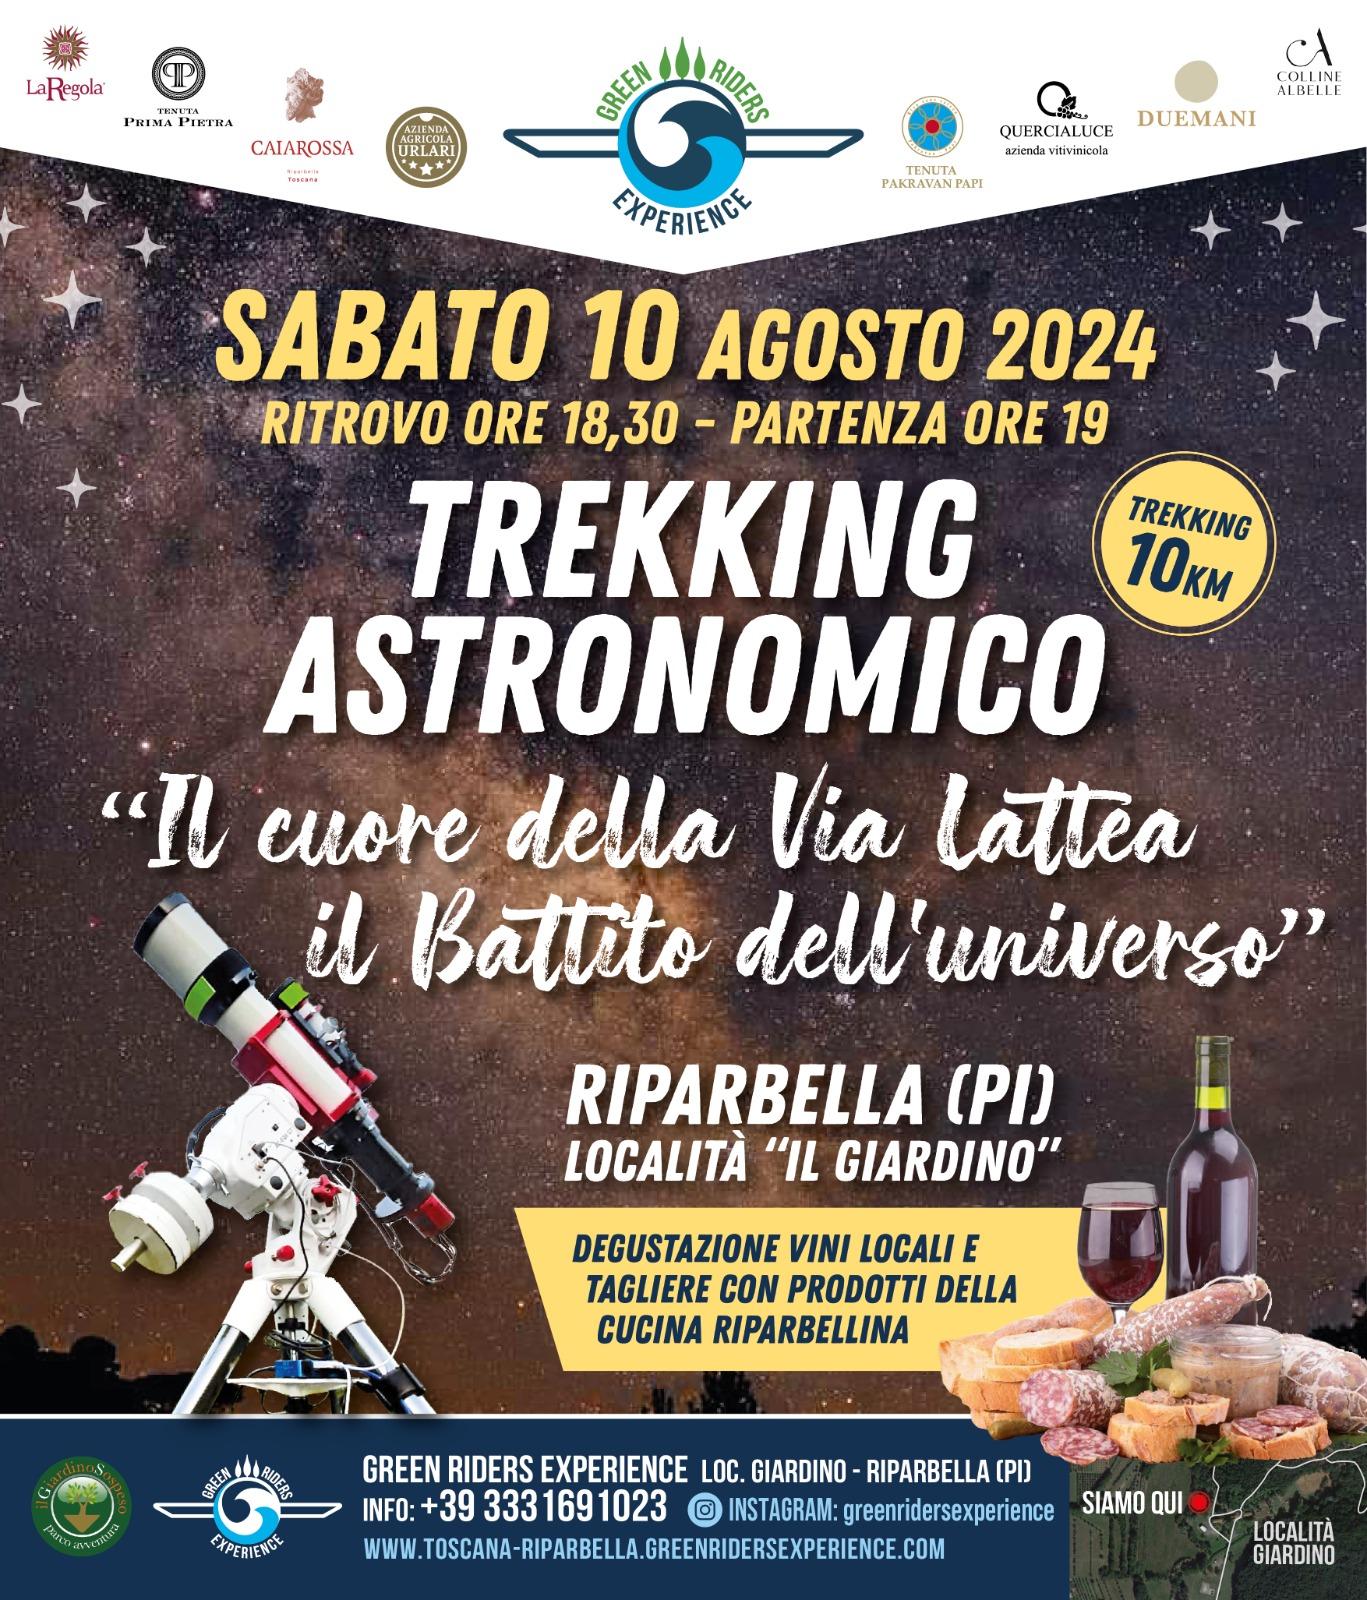 TREKKING ASTRONOMICO SABATO 10 AGOSTO " "IL CUORE DELLA VIA LATTEA IL BATTITO DELL'UNIVERSO""